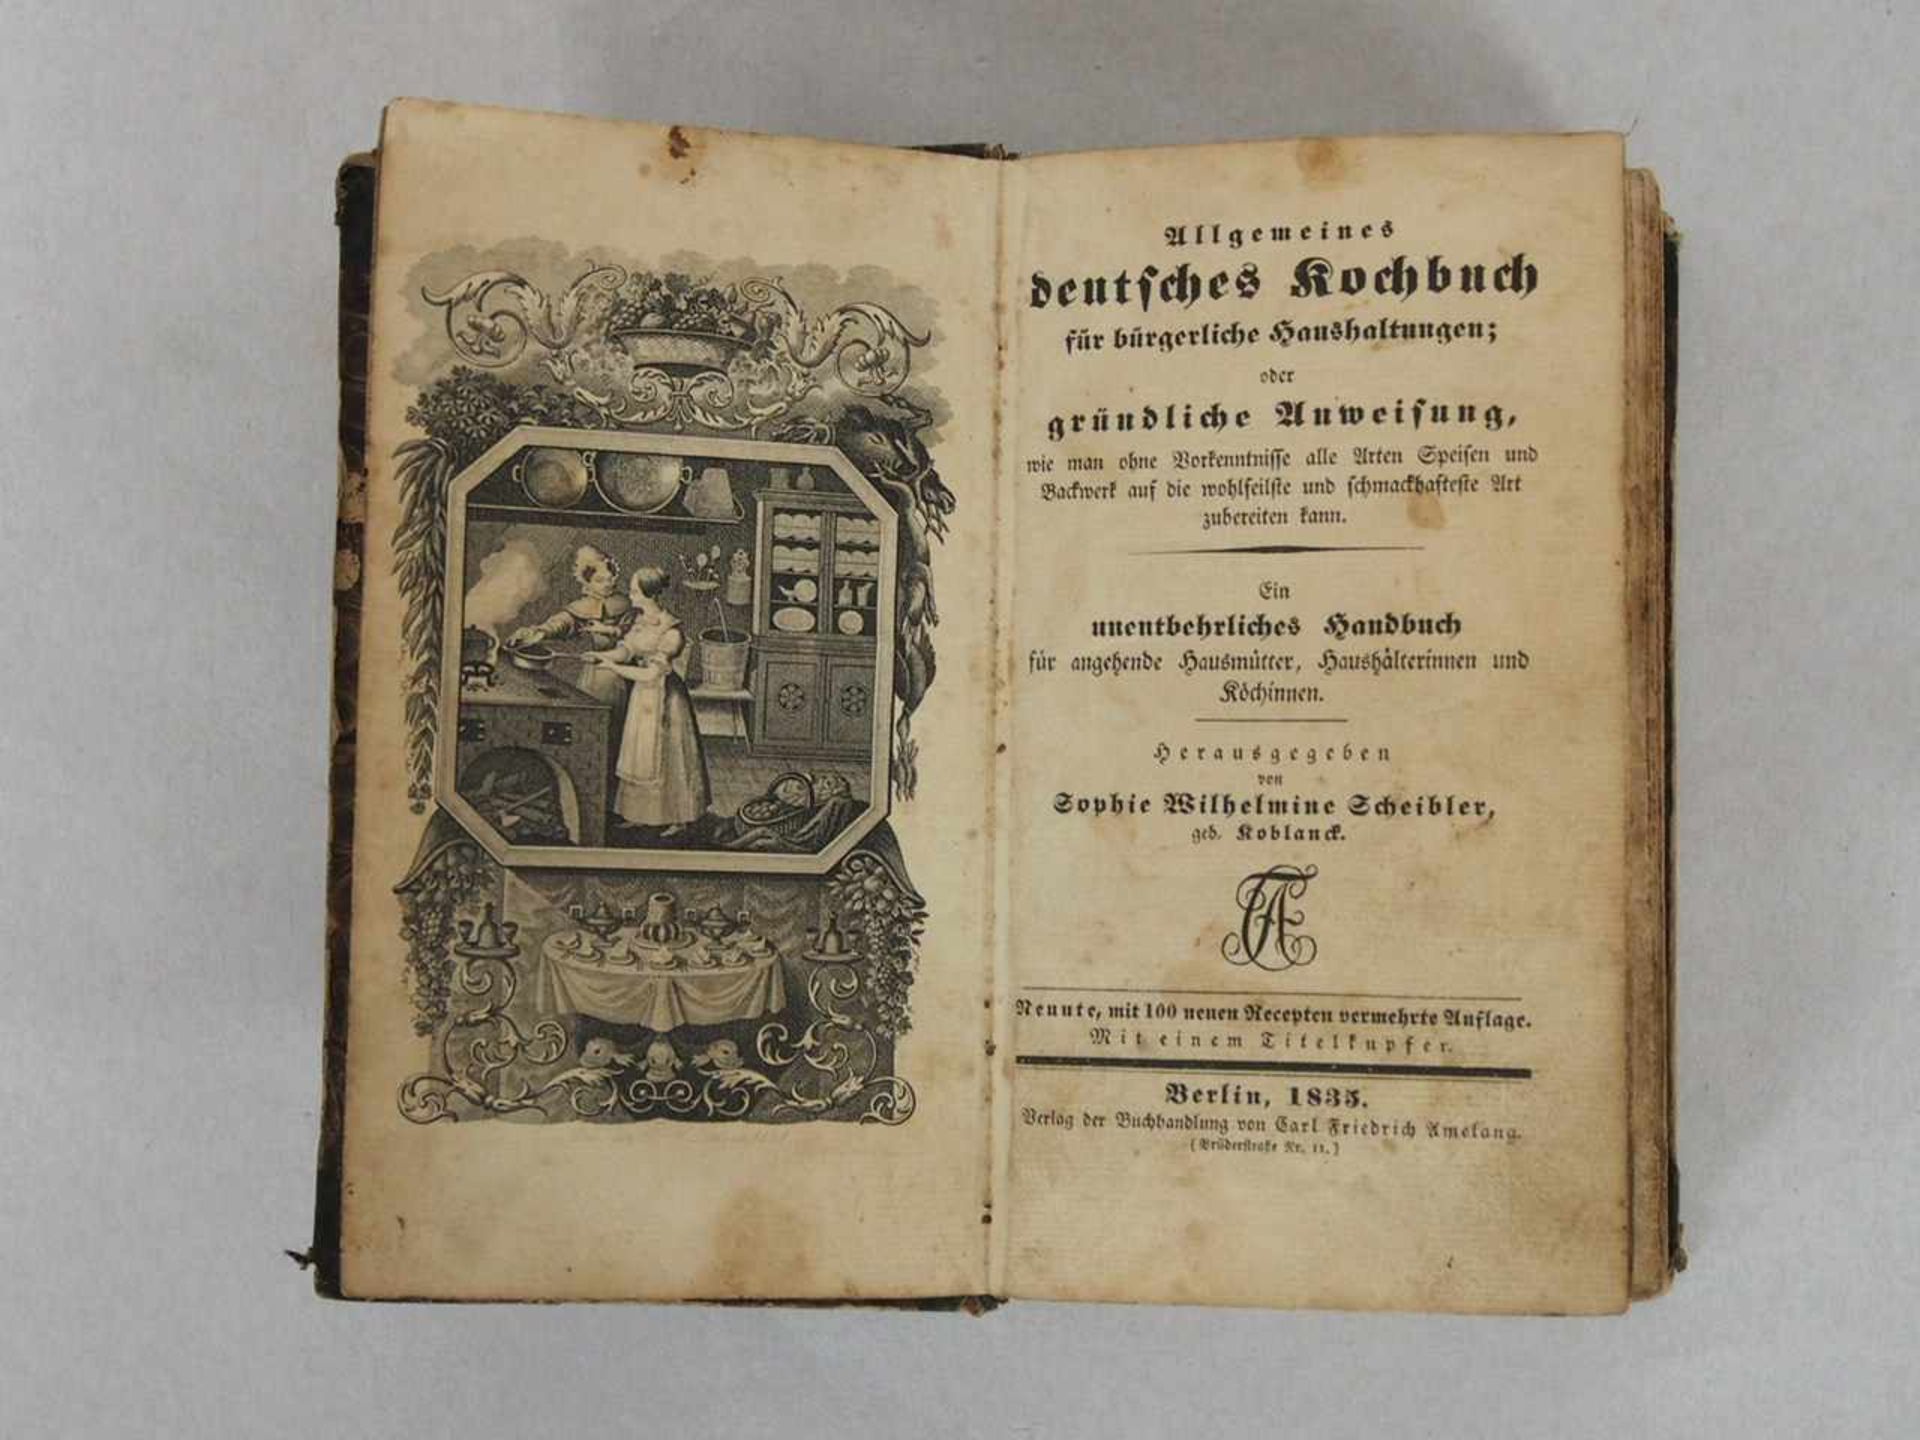 SCHEIBLER, Sophie WilhelmineAllgemeines deutsches Kochbuch9. Auflage, Berlin 1835 (